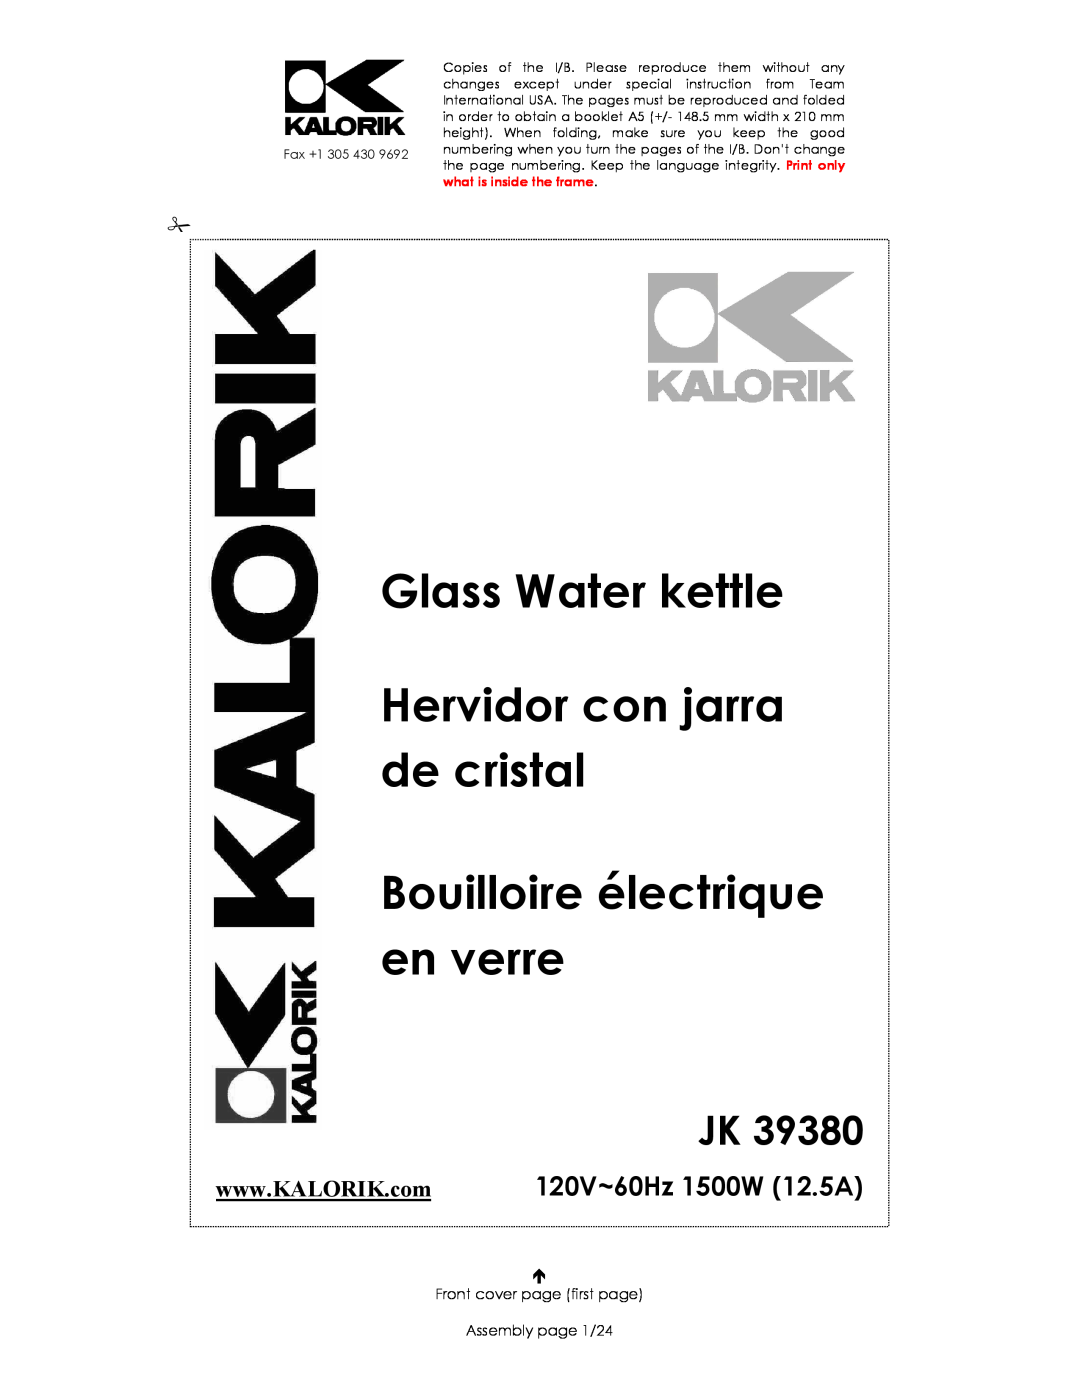 Kalorik JK 39380 manual Glass Water kettle Hervidor con jarra de cristal, Bouilloire électrique en verre 